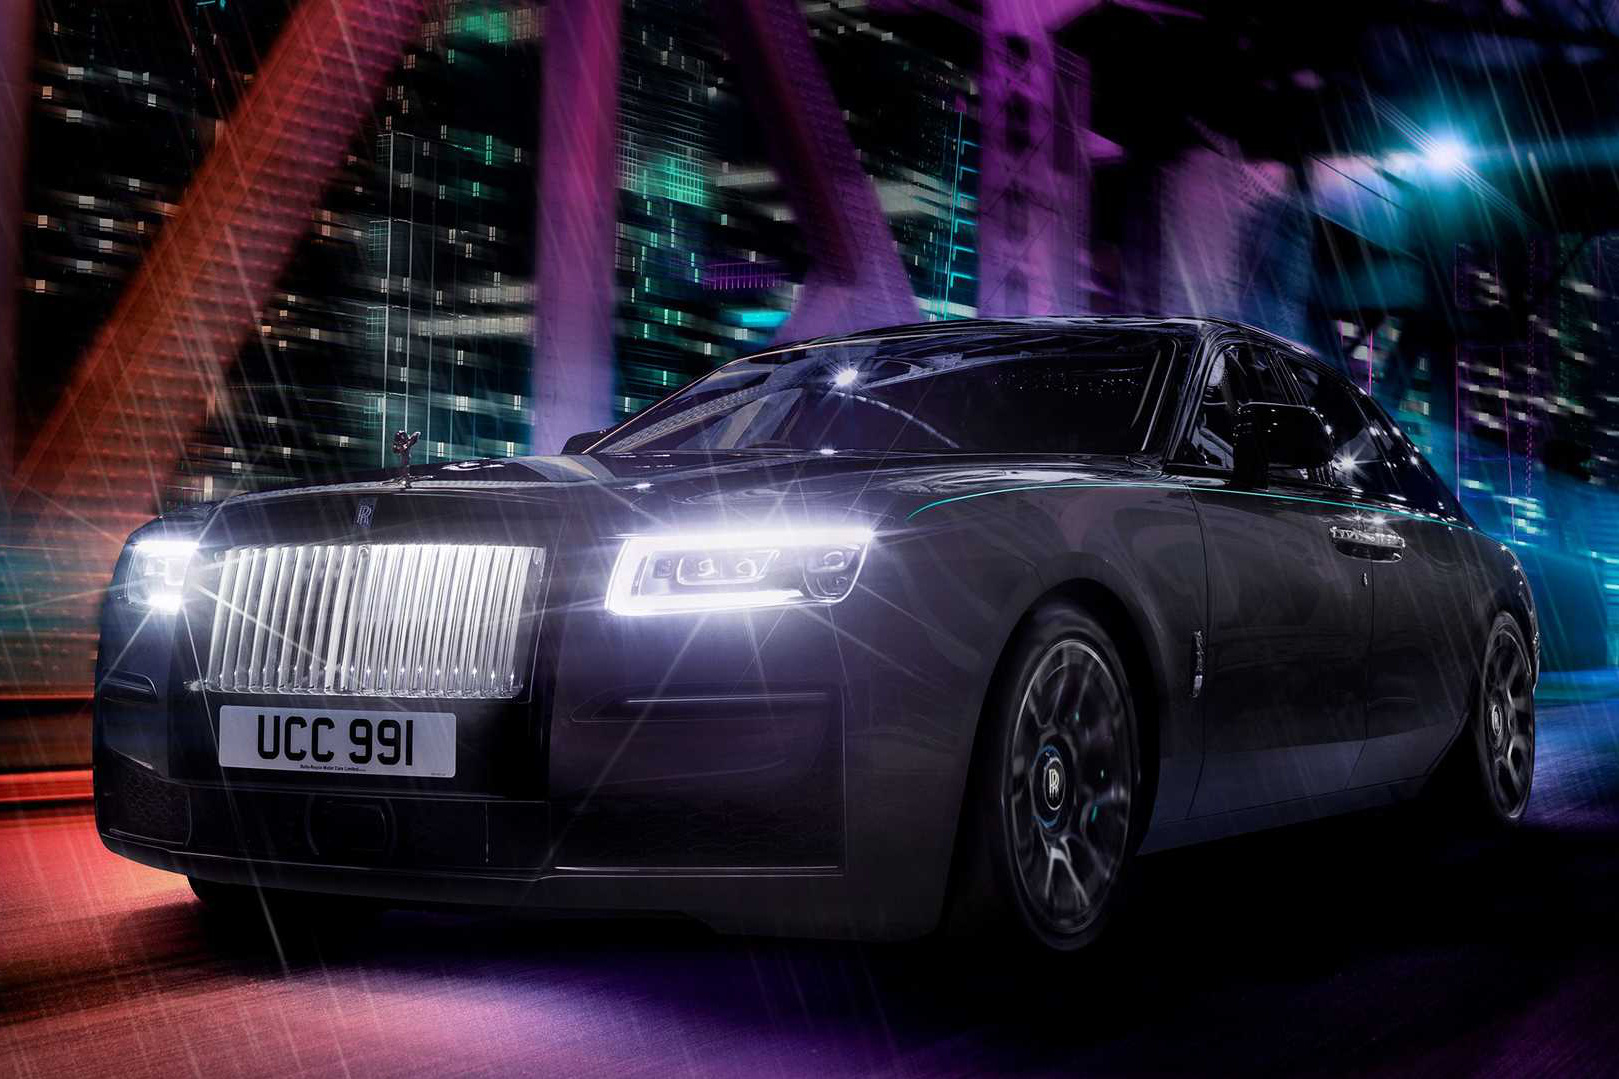 Ra mắt Rolls-Royce Ghost Black Badge - Bóng ma sang trọng đỉnh cao mới của giới thượng lưu